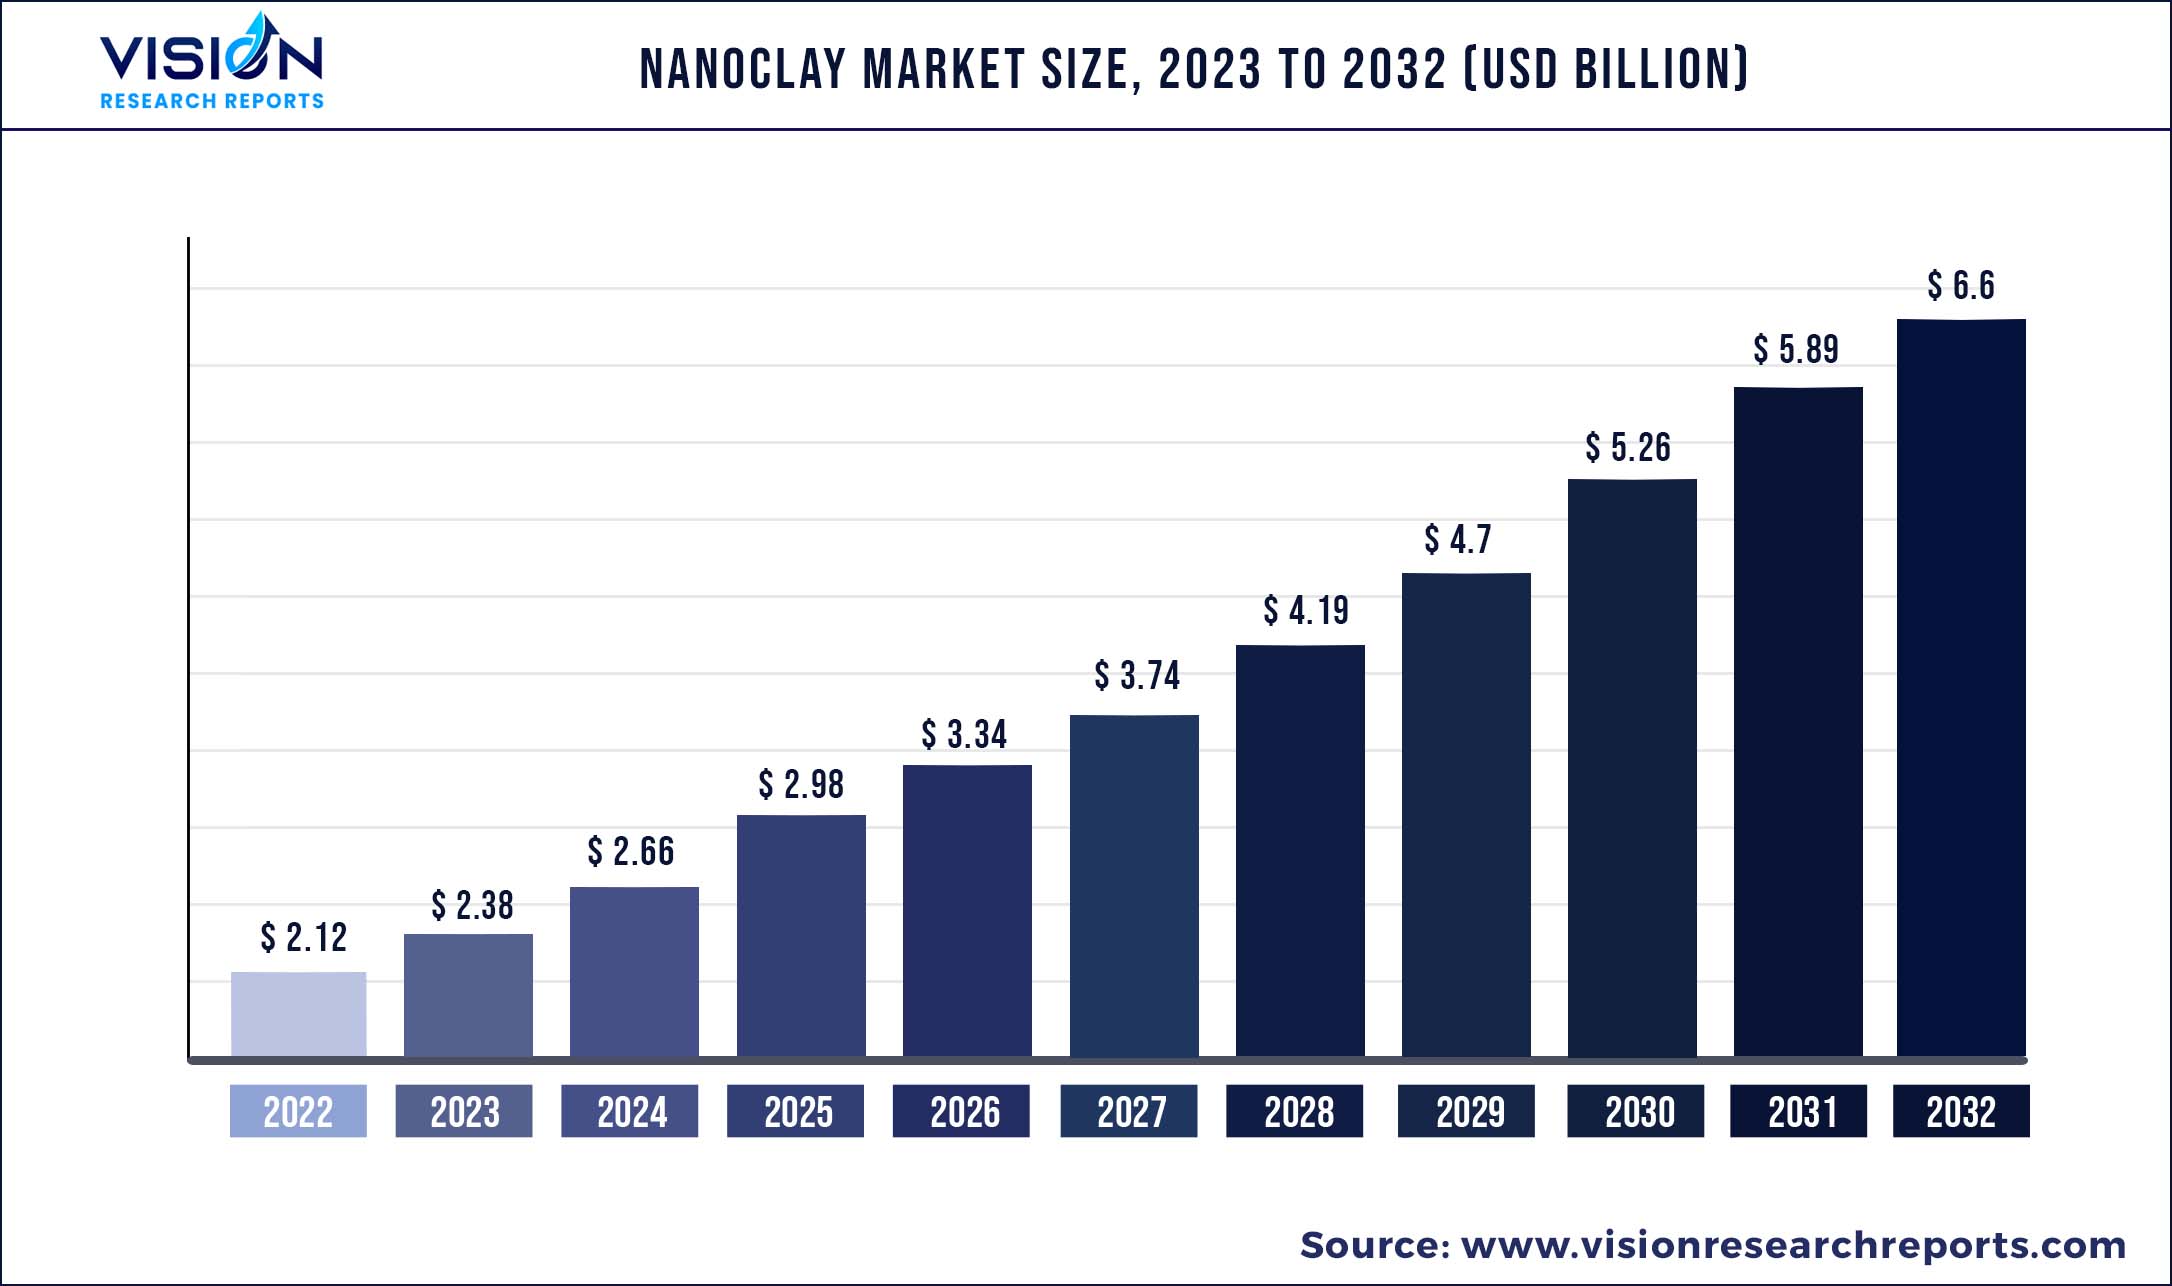 Nanoclay Market Size 2023 to 2032